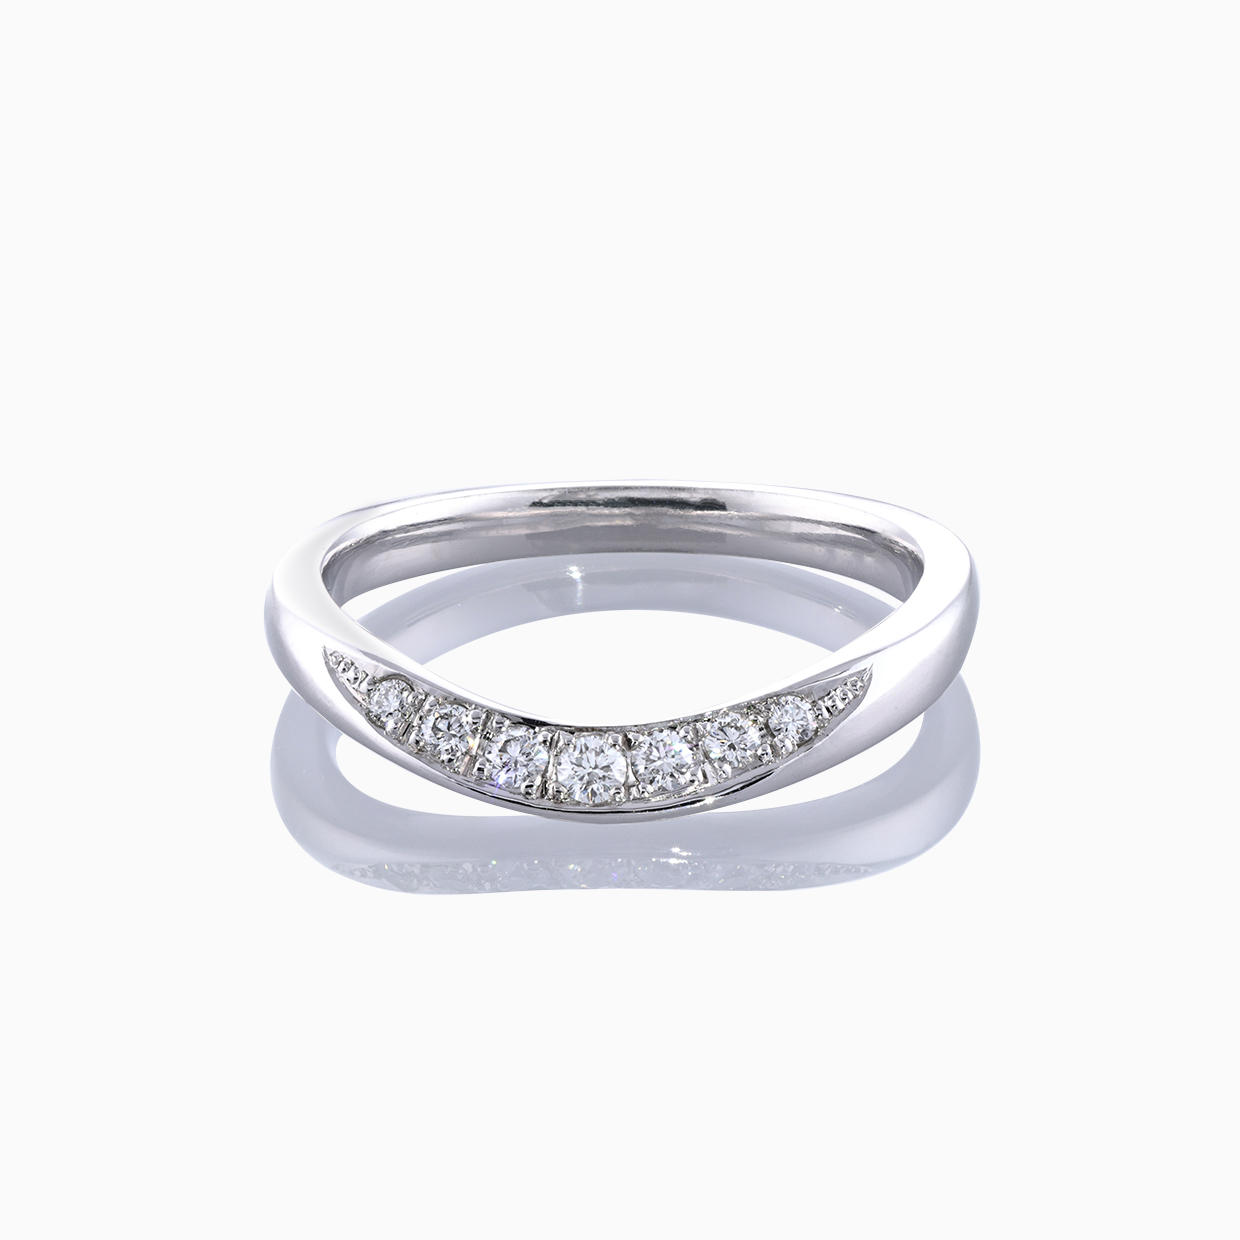 ダイヤモンドのリングと婚約指輪 01